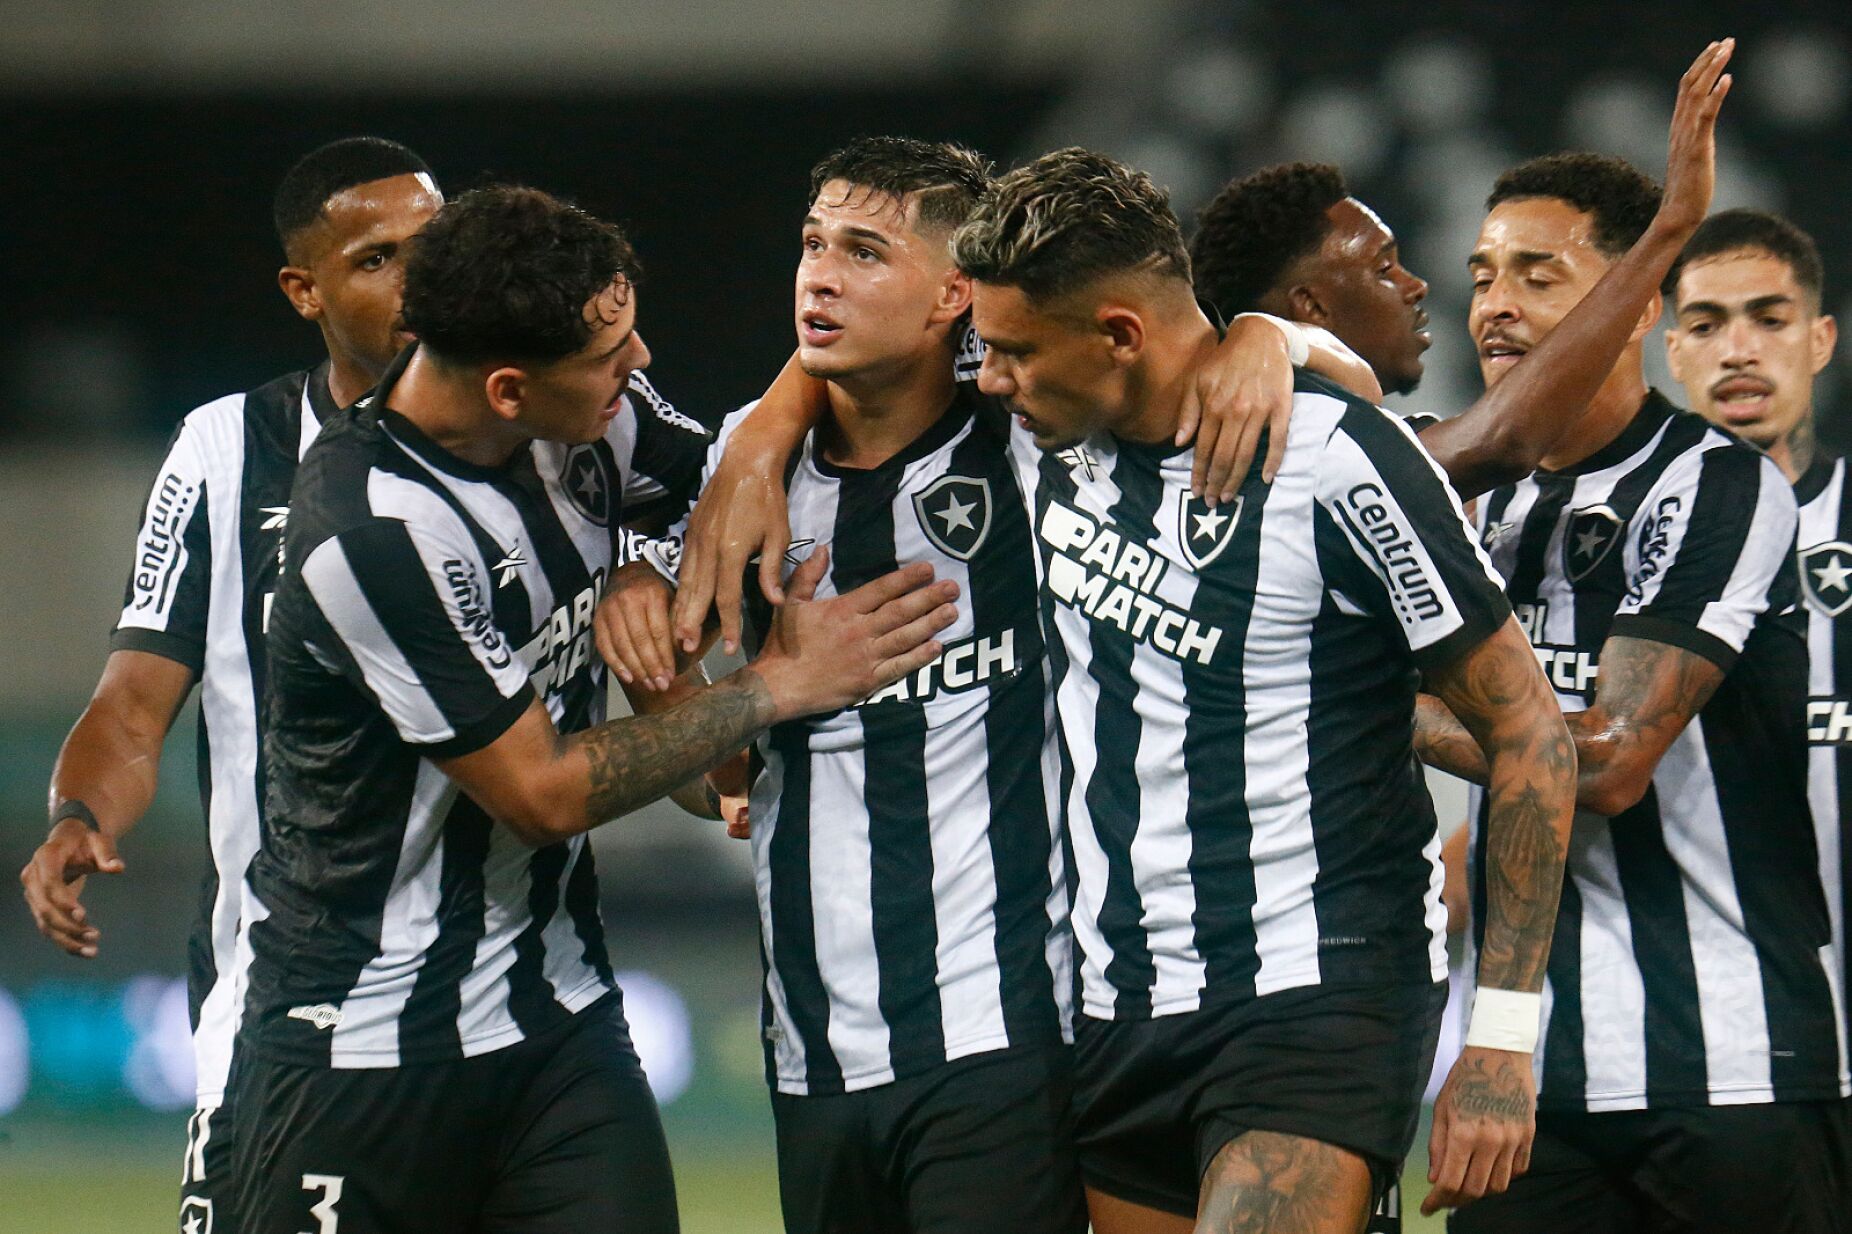 Artur Jorge estreia-se a vencer no Botafogo: "Temos de passar a mensagem..."